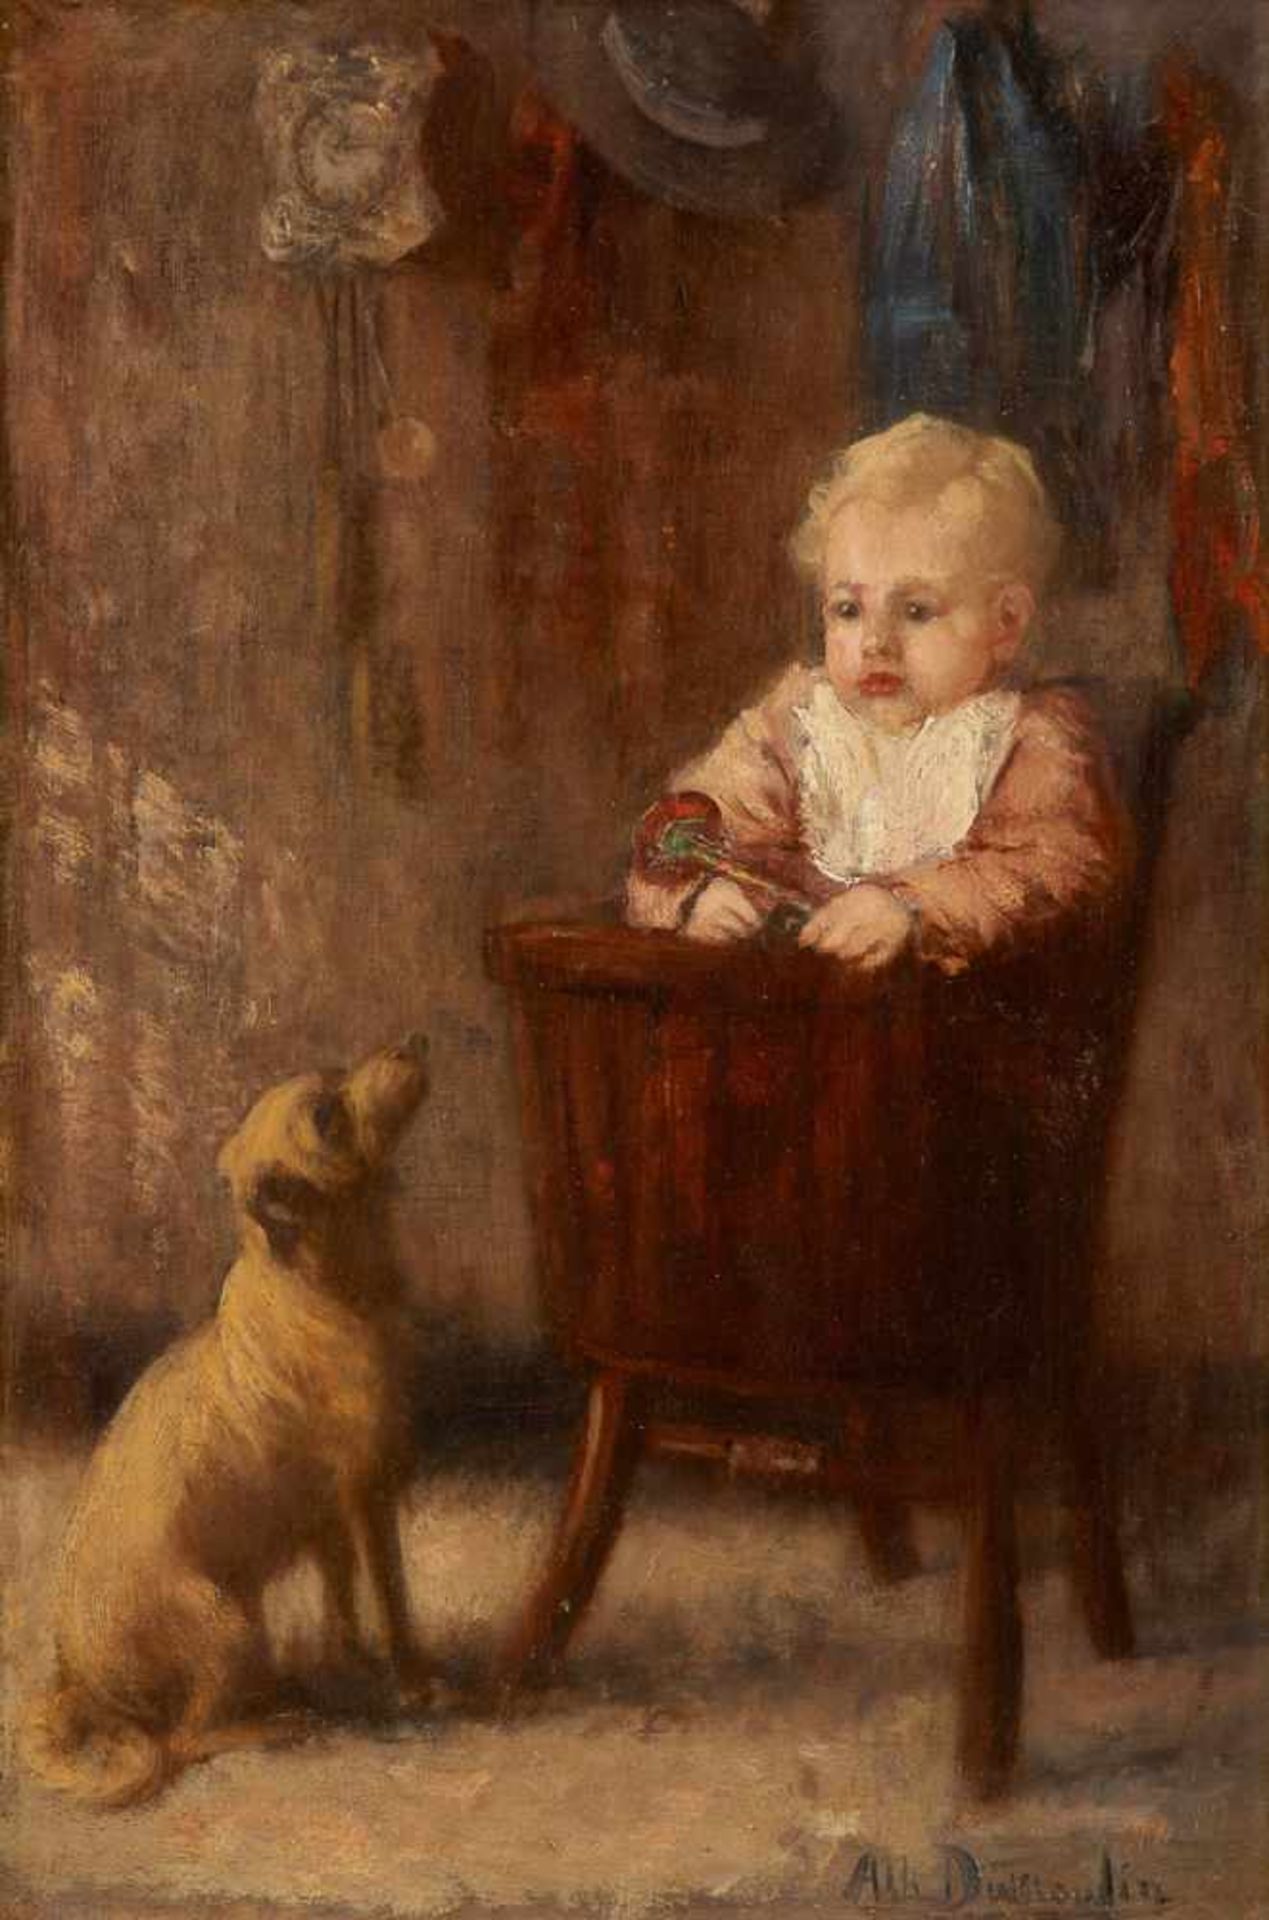 Albert DUMOULIN École hollandaise (1871-1935)Huile sur toile: L'enfant dans sa chaise haute et